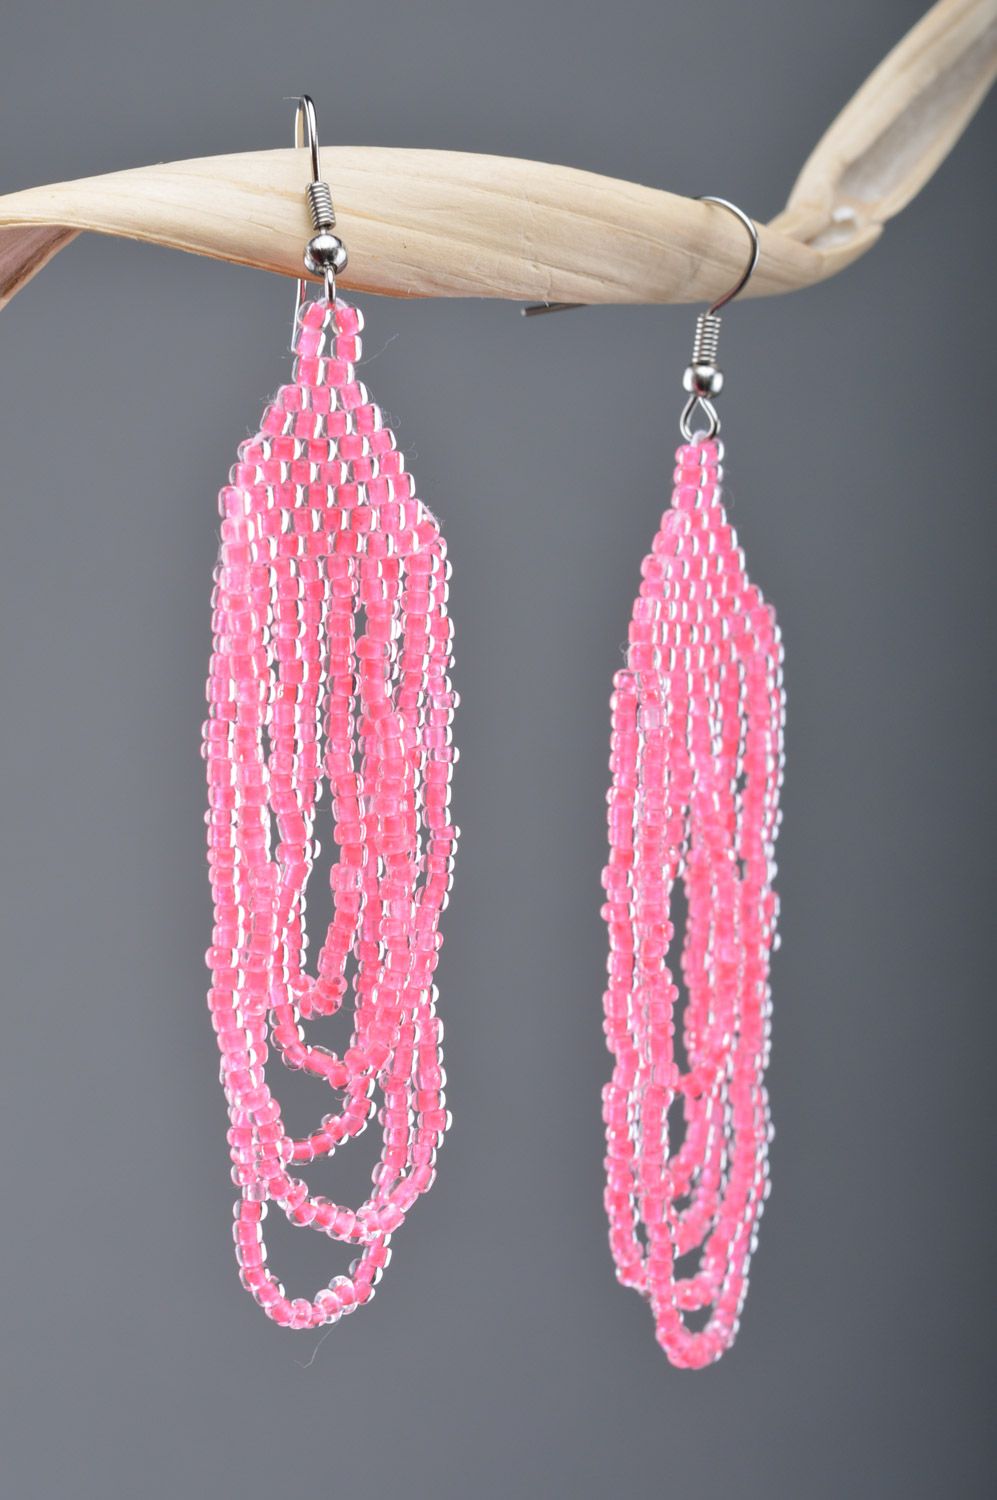 Длинные серьги из чешского бисера ручной работы яркие розовые нарядные для девушки фото 1